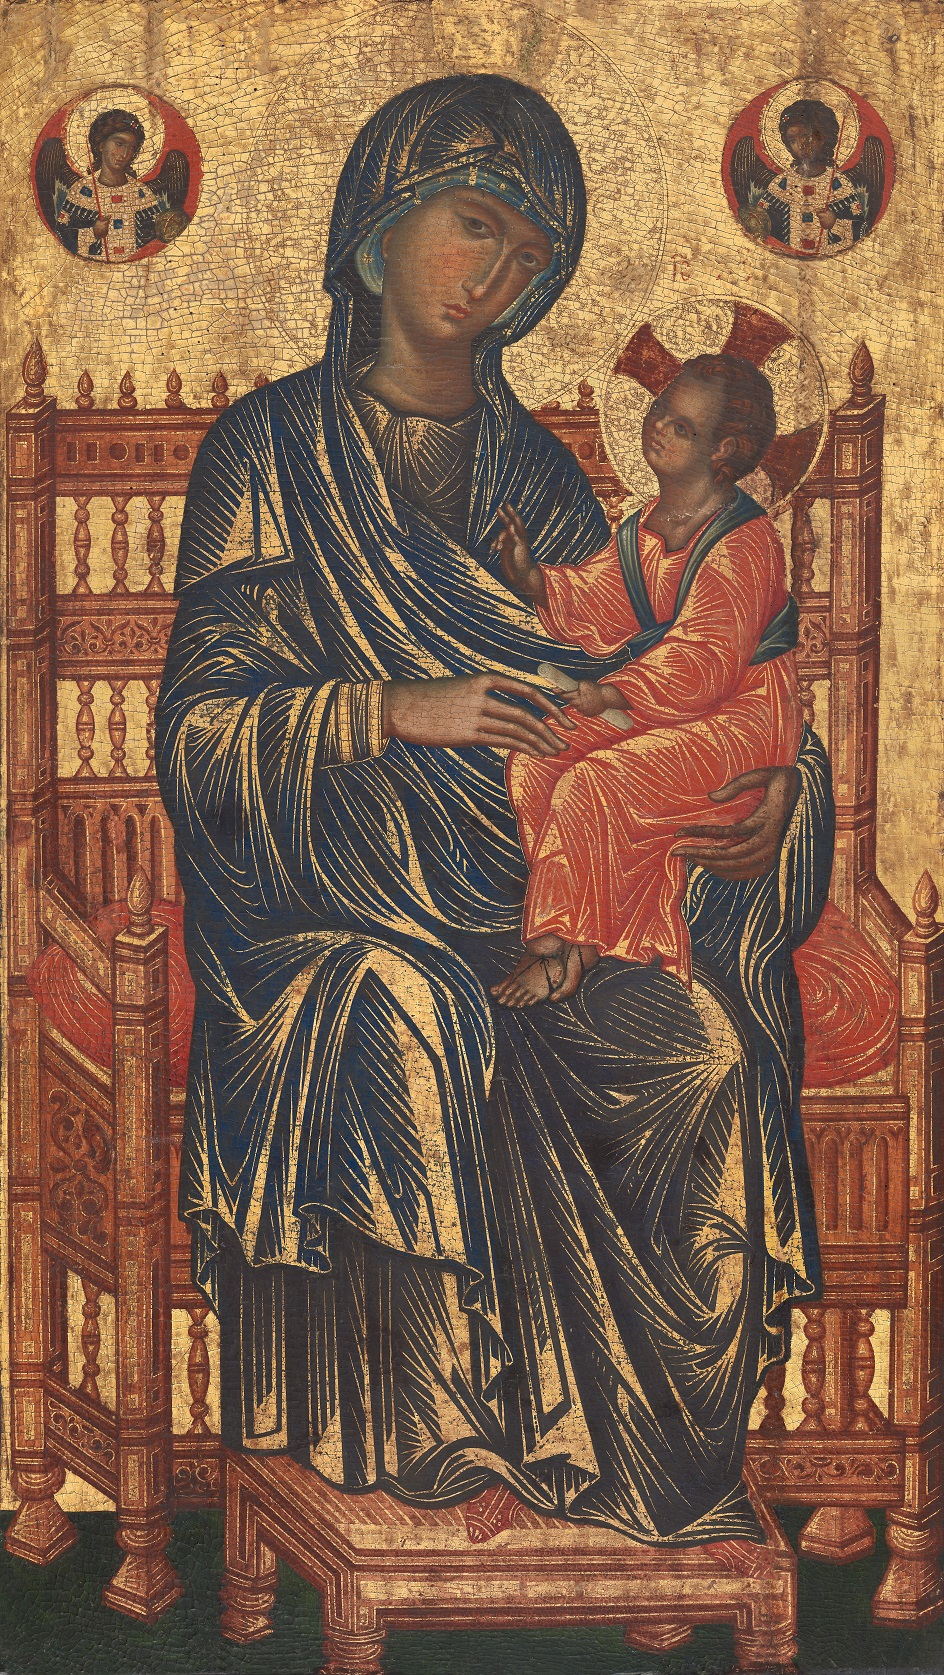 Мадонна на картинах. Икона в византийском стиле «Мадонна с младенцем», XIII век